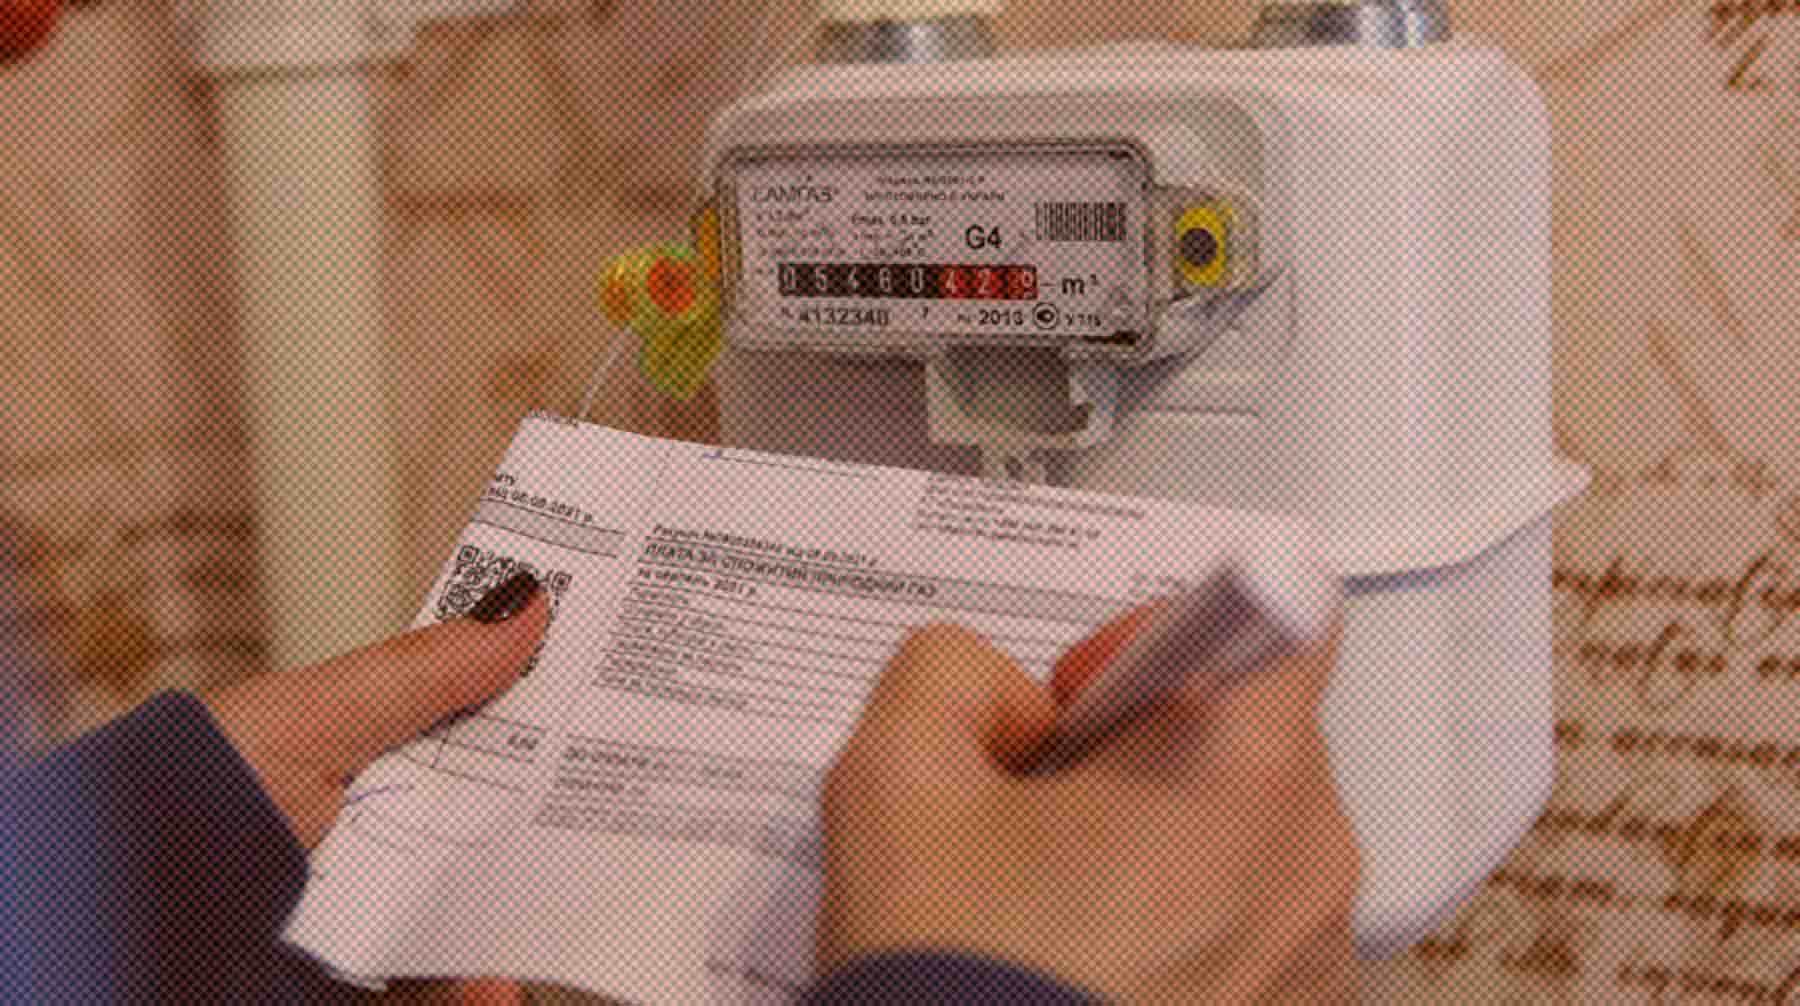 Печатные документы могут заменить на электронные из-за проблем с переработкой бумаги Фото: РИА Новости / Стрингер